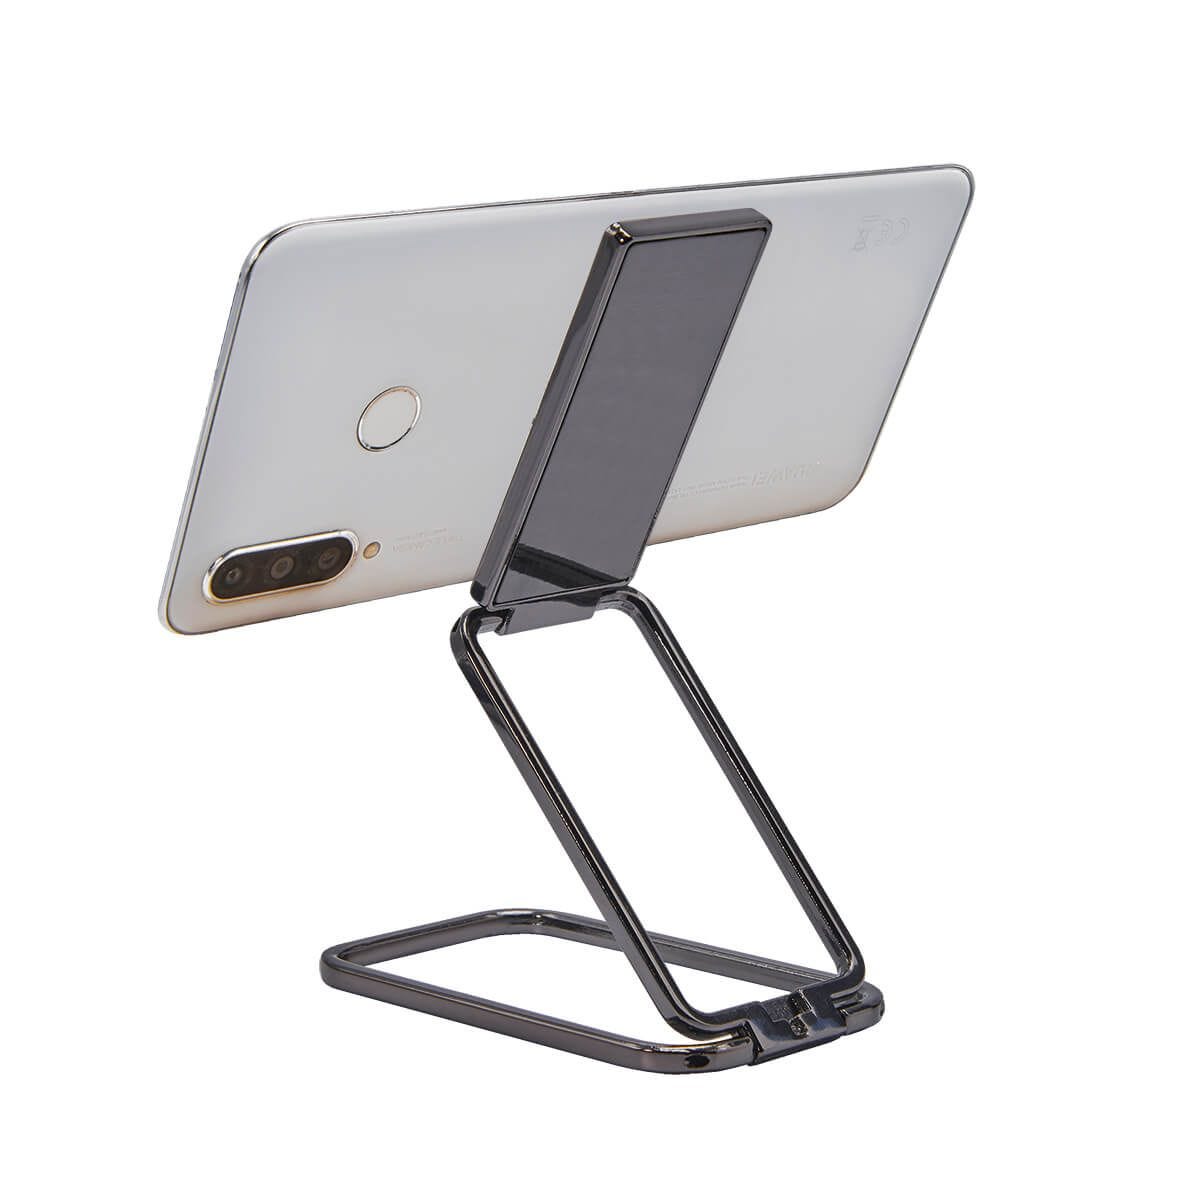 CEL063, SOPORTE MAAT Soporte adherible para smartphone o tablet. Diseño plegable para ajustar en diferentes posiciones, dos brazos ajustables para proporcionar más ángulos de visión y rotación de 360° en la base.